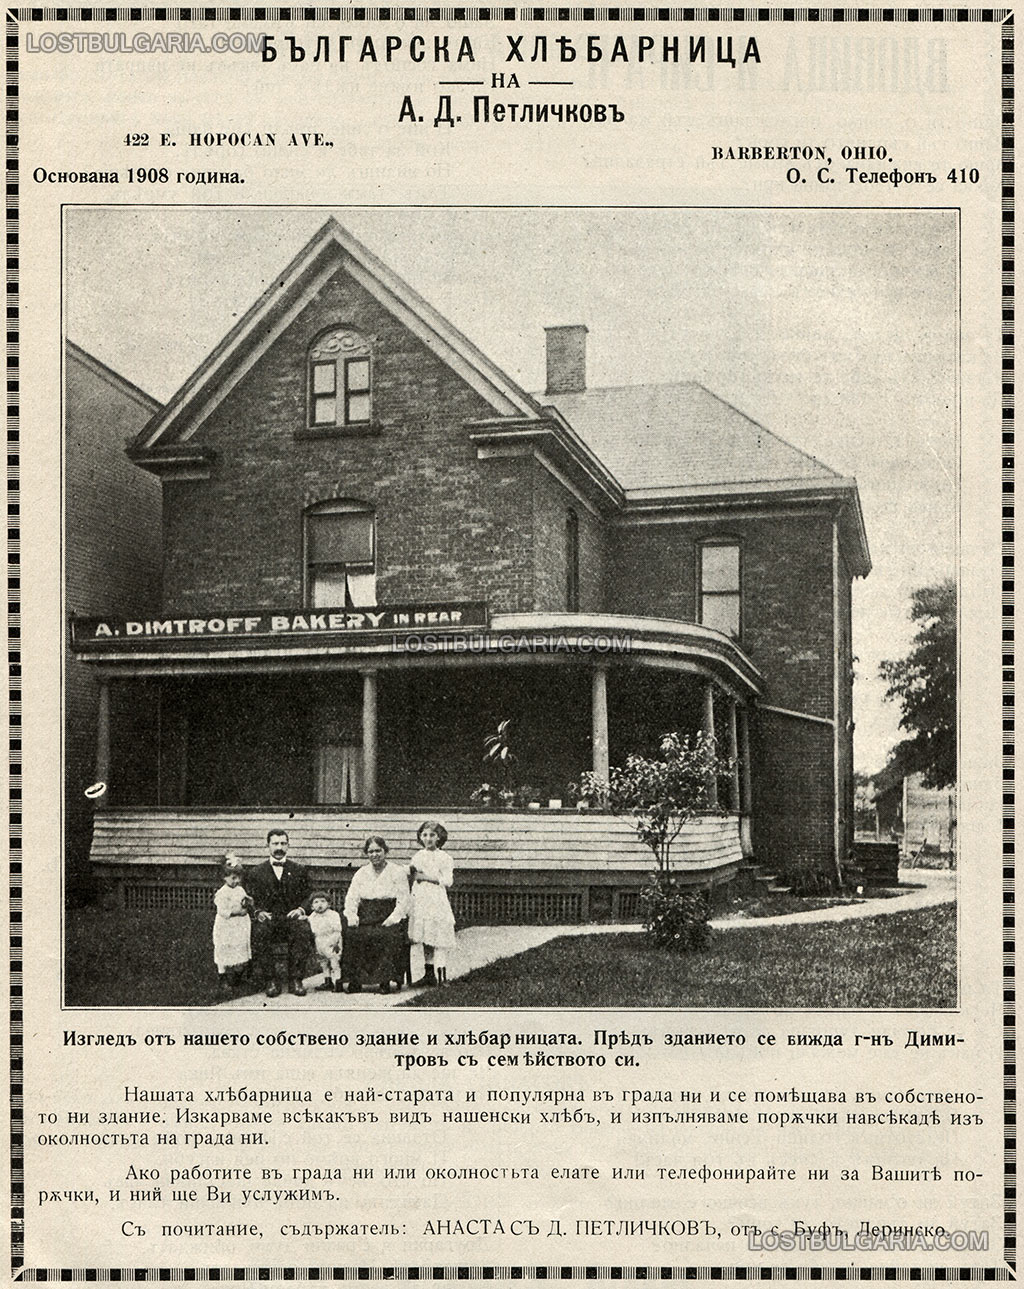 Реклама на българската хлебарница на Анастас Петличков, родом от село Буф, Леринско в Барбъртън, Охайо, 1921 г.